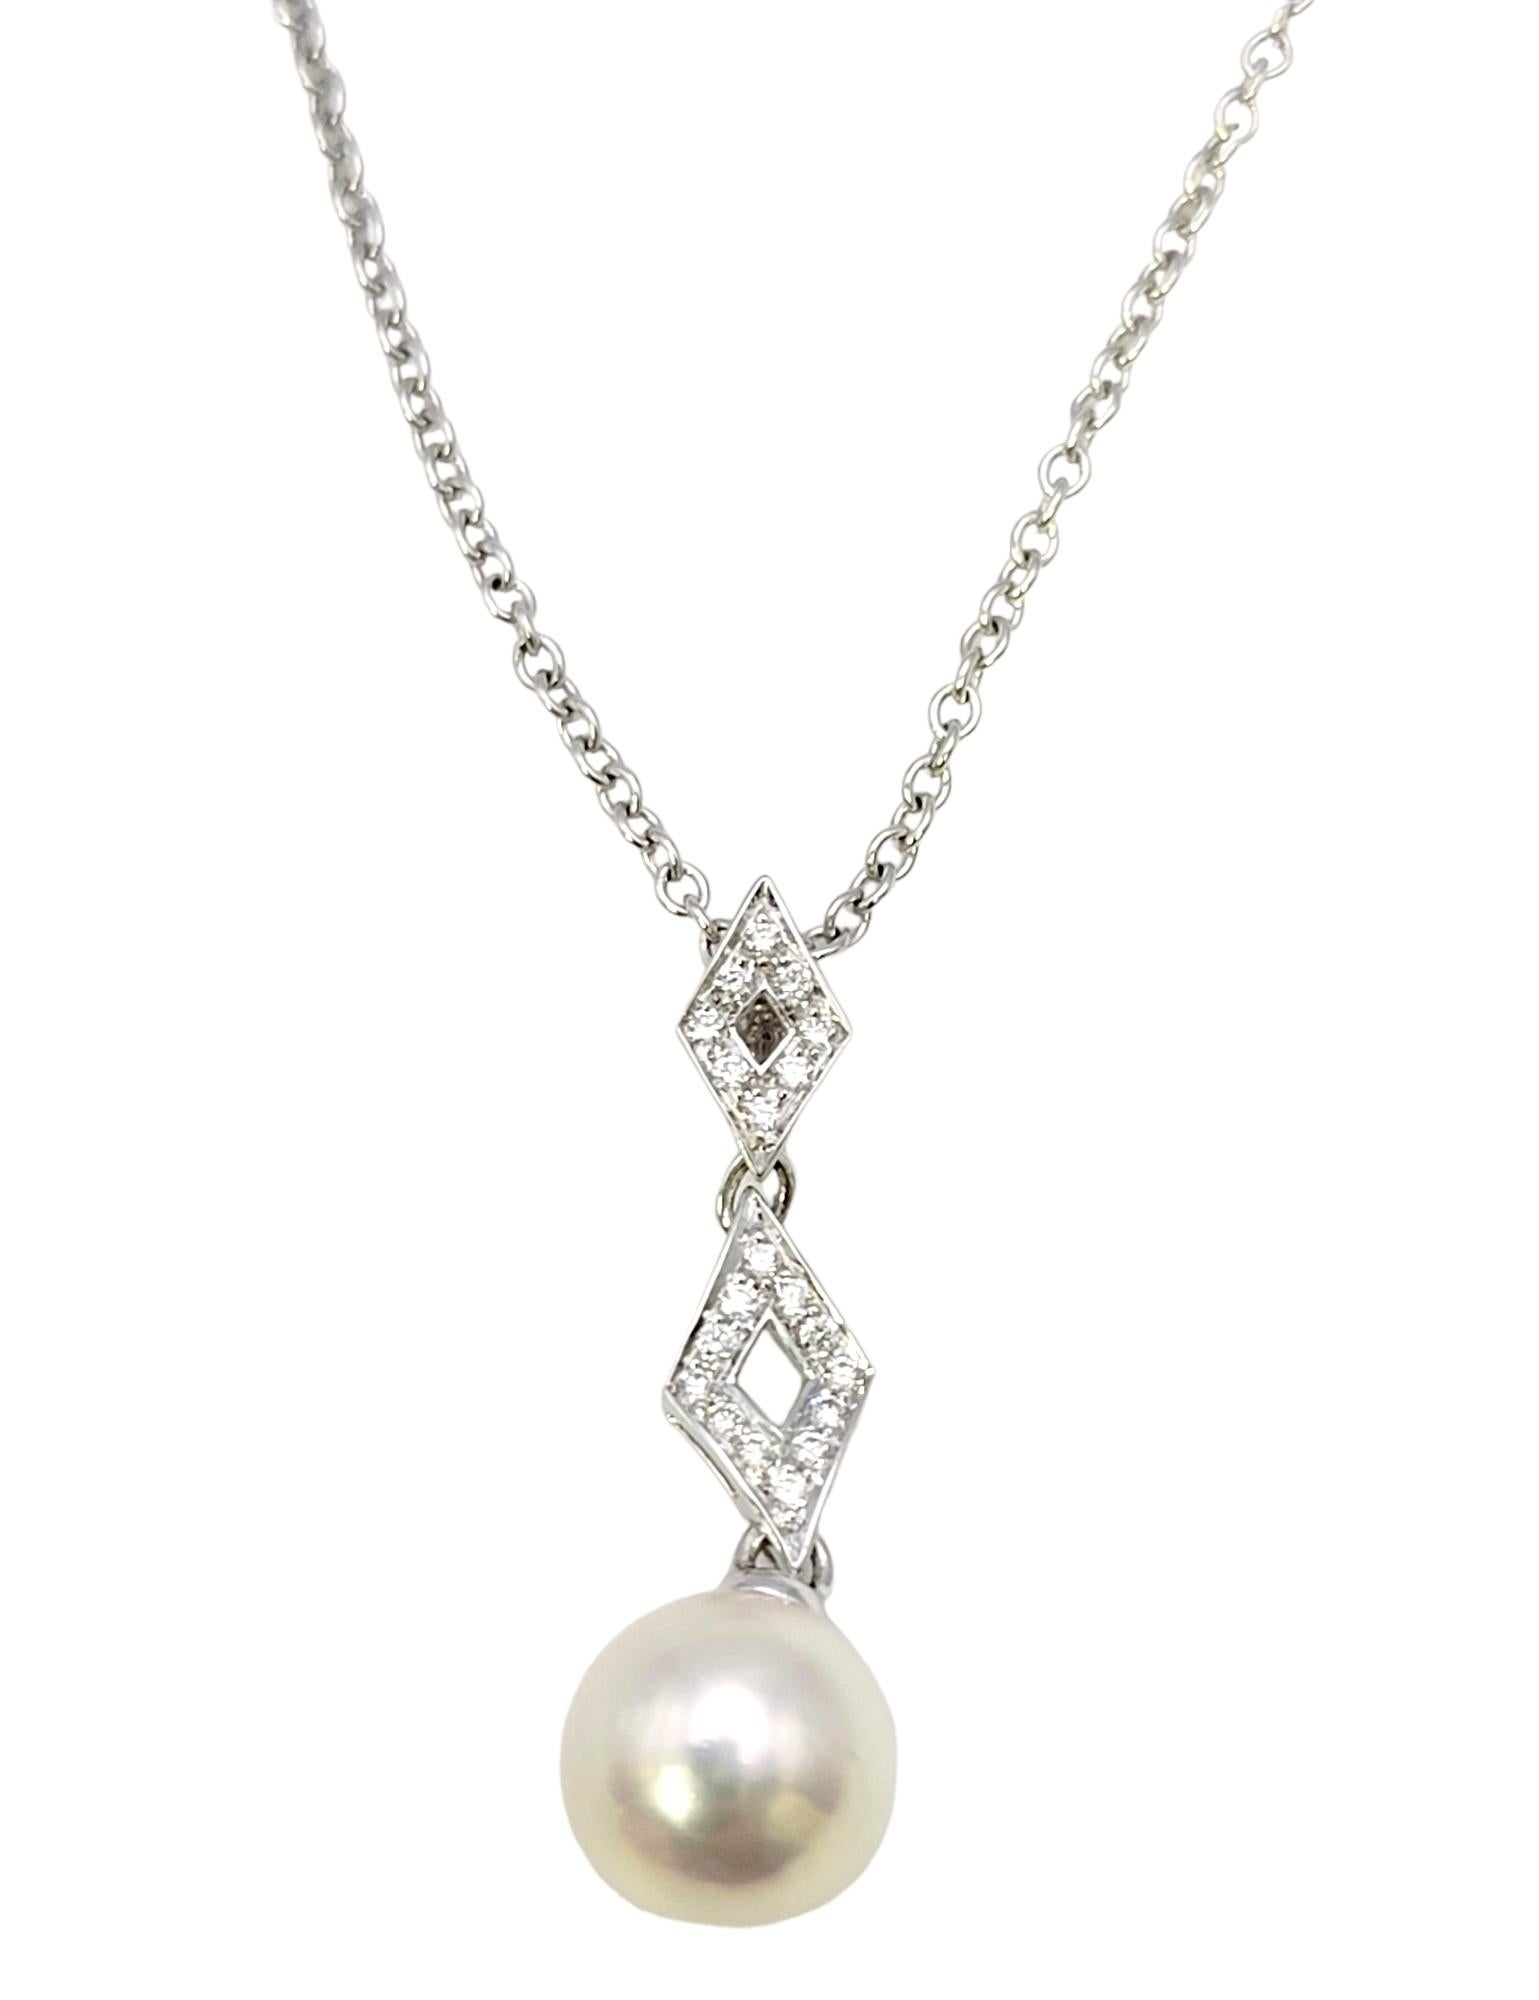 Zeitlose Diamant- und Perlenkette des renommierten Juweliers Mikimoto. Mikimoto ist ein internationales Luxusunternehmen, das als erster Hersteller von Zuchtperlenschmuck anerkannt ist. Die weltweit bekannte Marke ist für ihre hervorragende